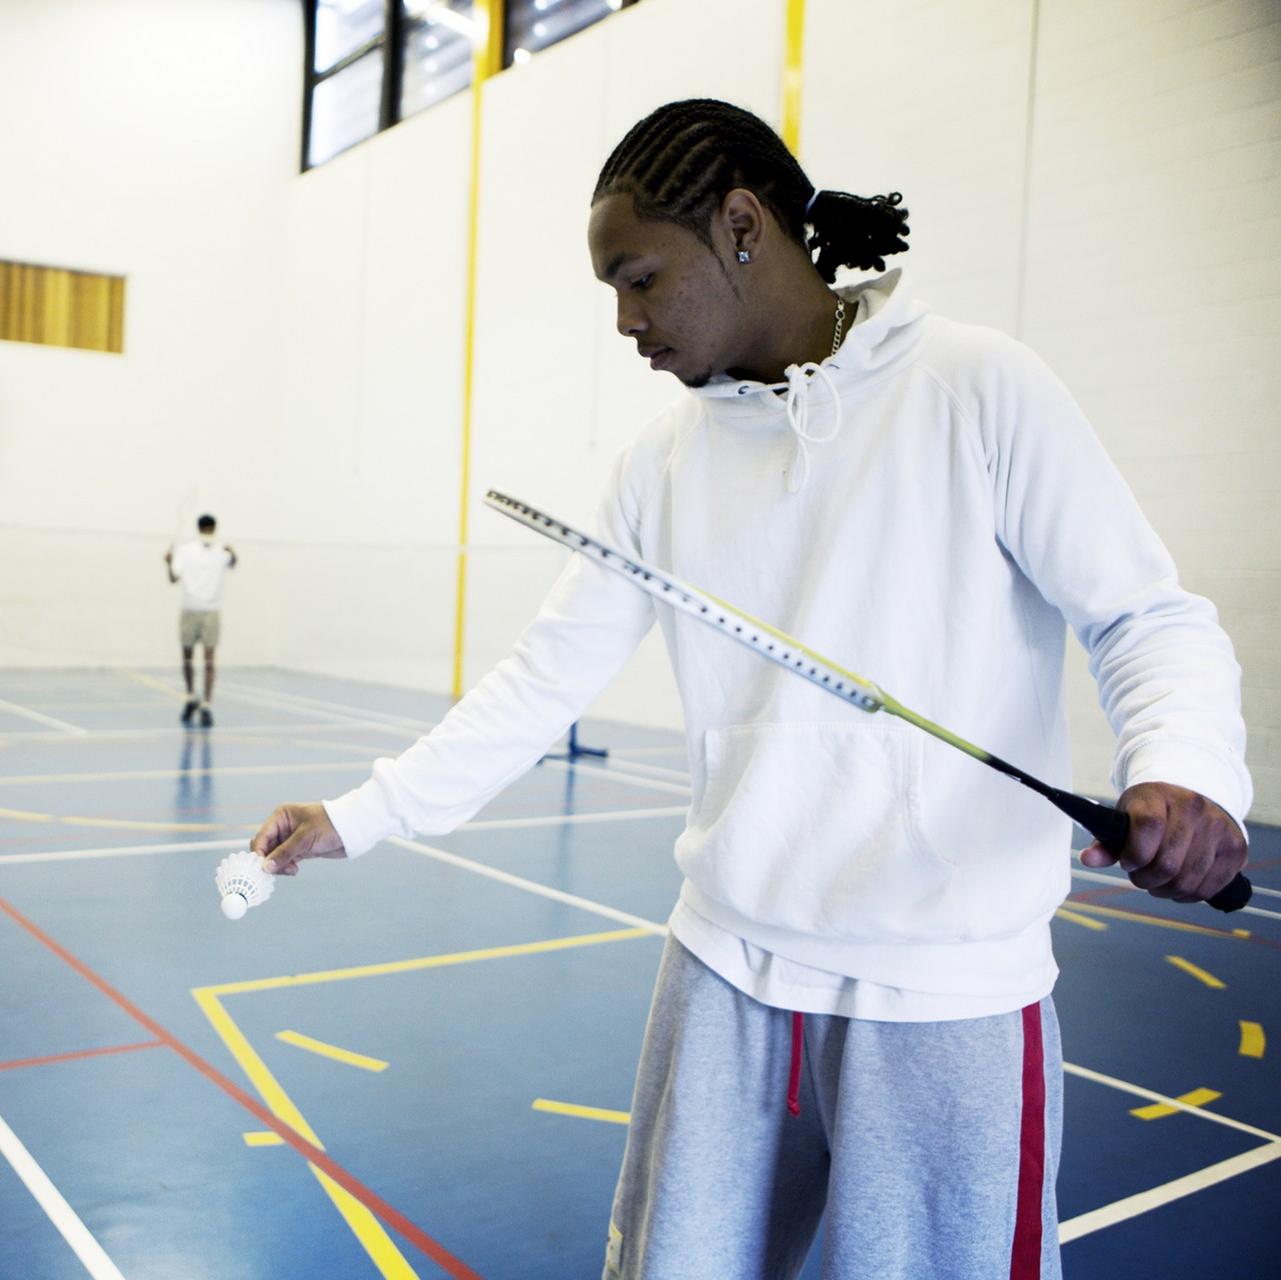 Le badminton, un sport adapté aux capacités de chacun